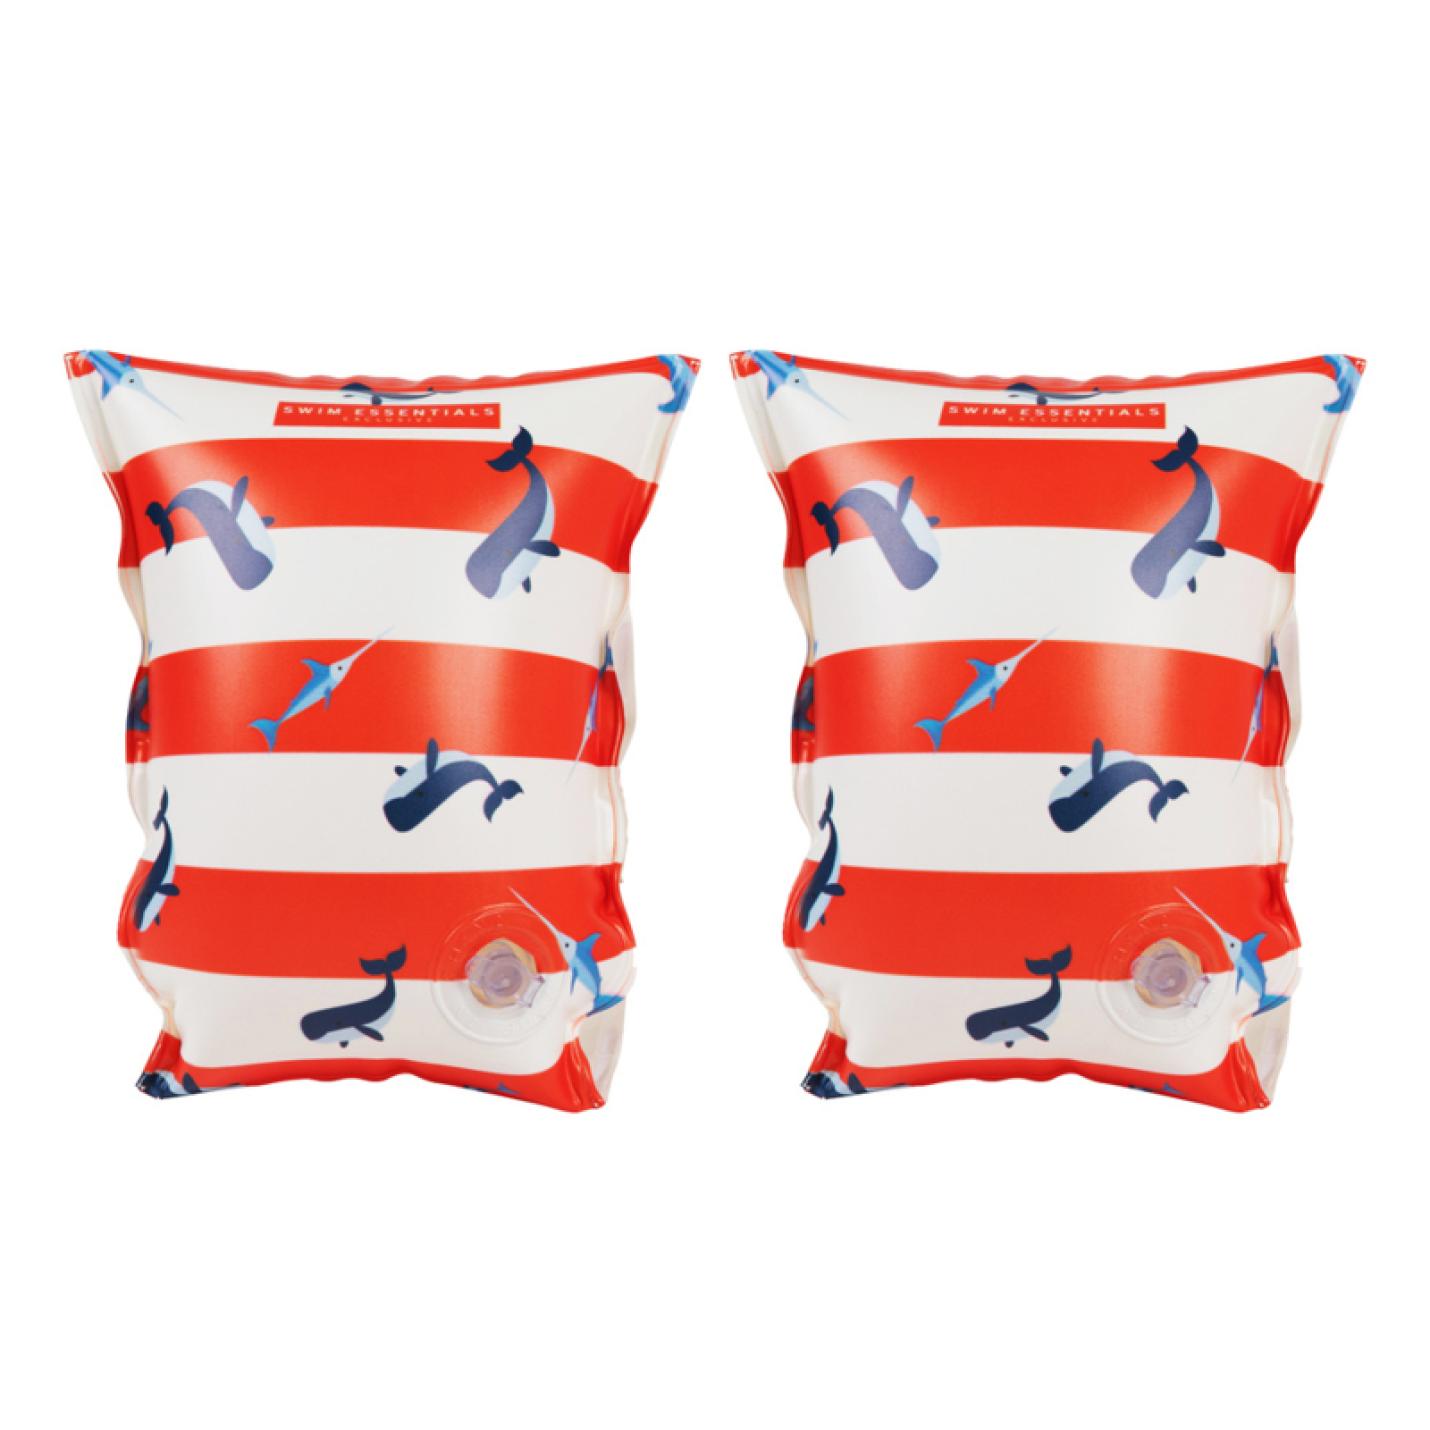 zwembandjes of zwemvleugels voor kinderen van swim essentials met walvis print rood wit